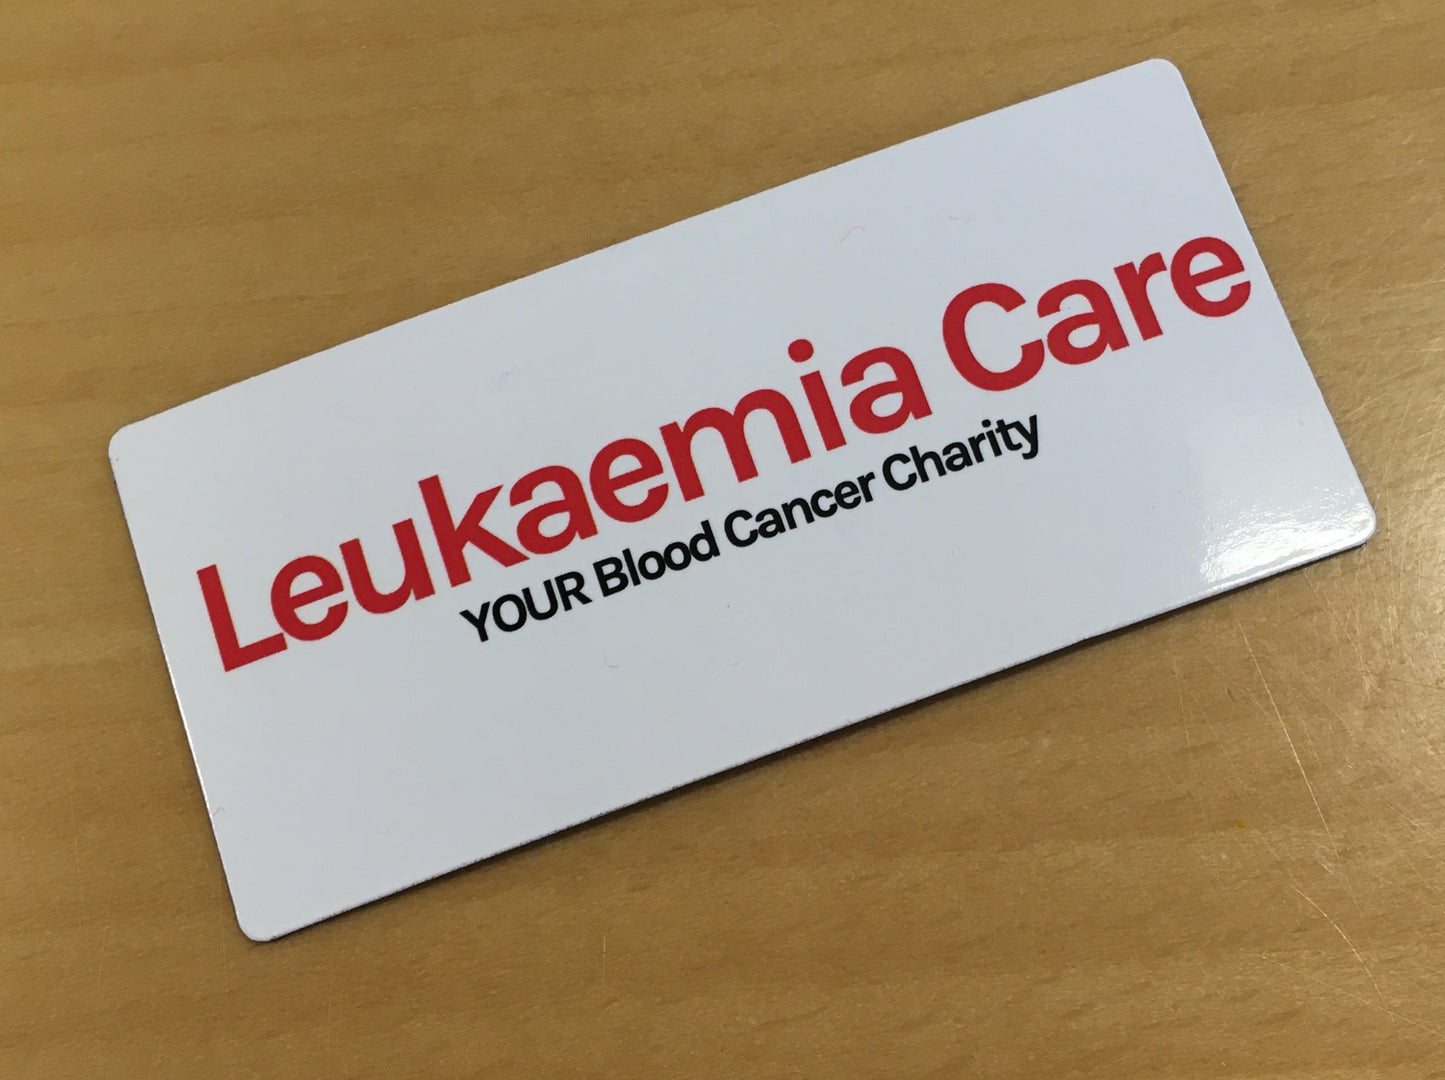 Leukaemia Care slim magnet